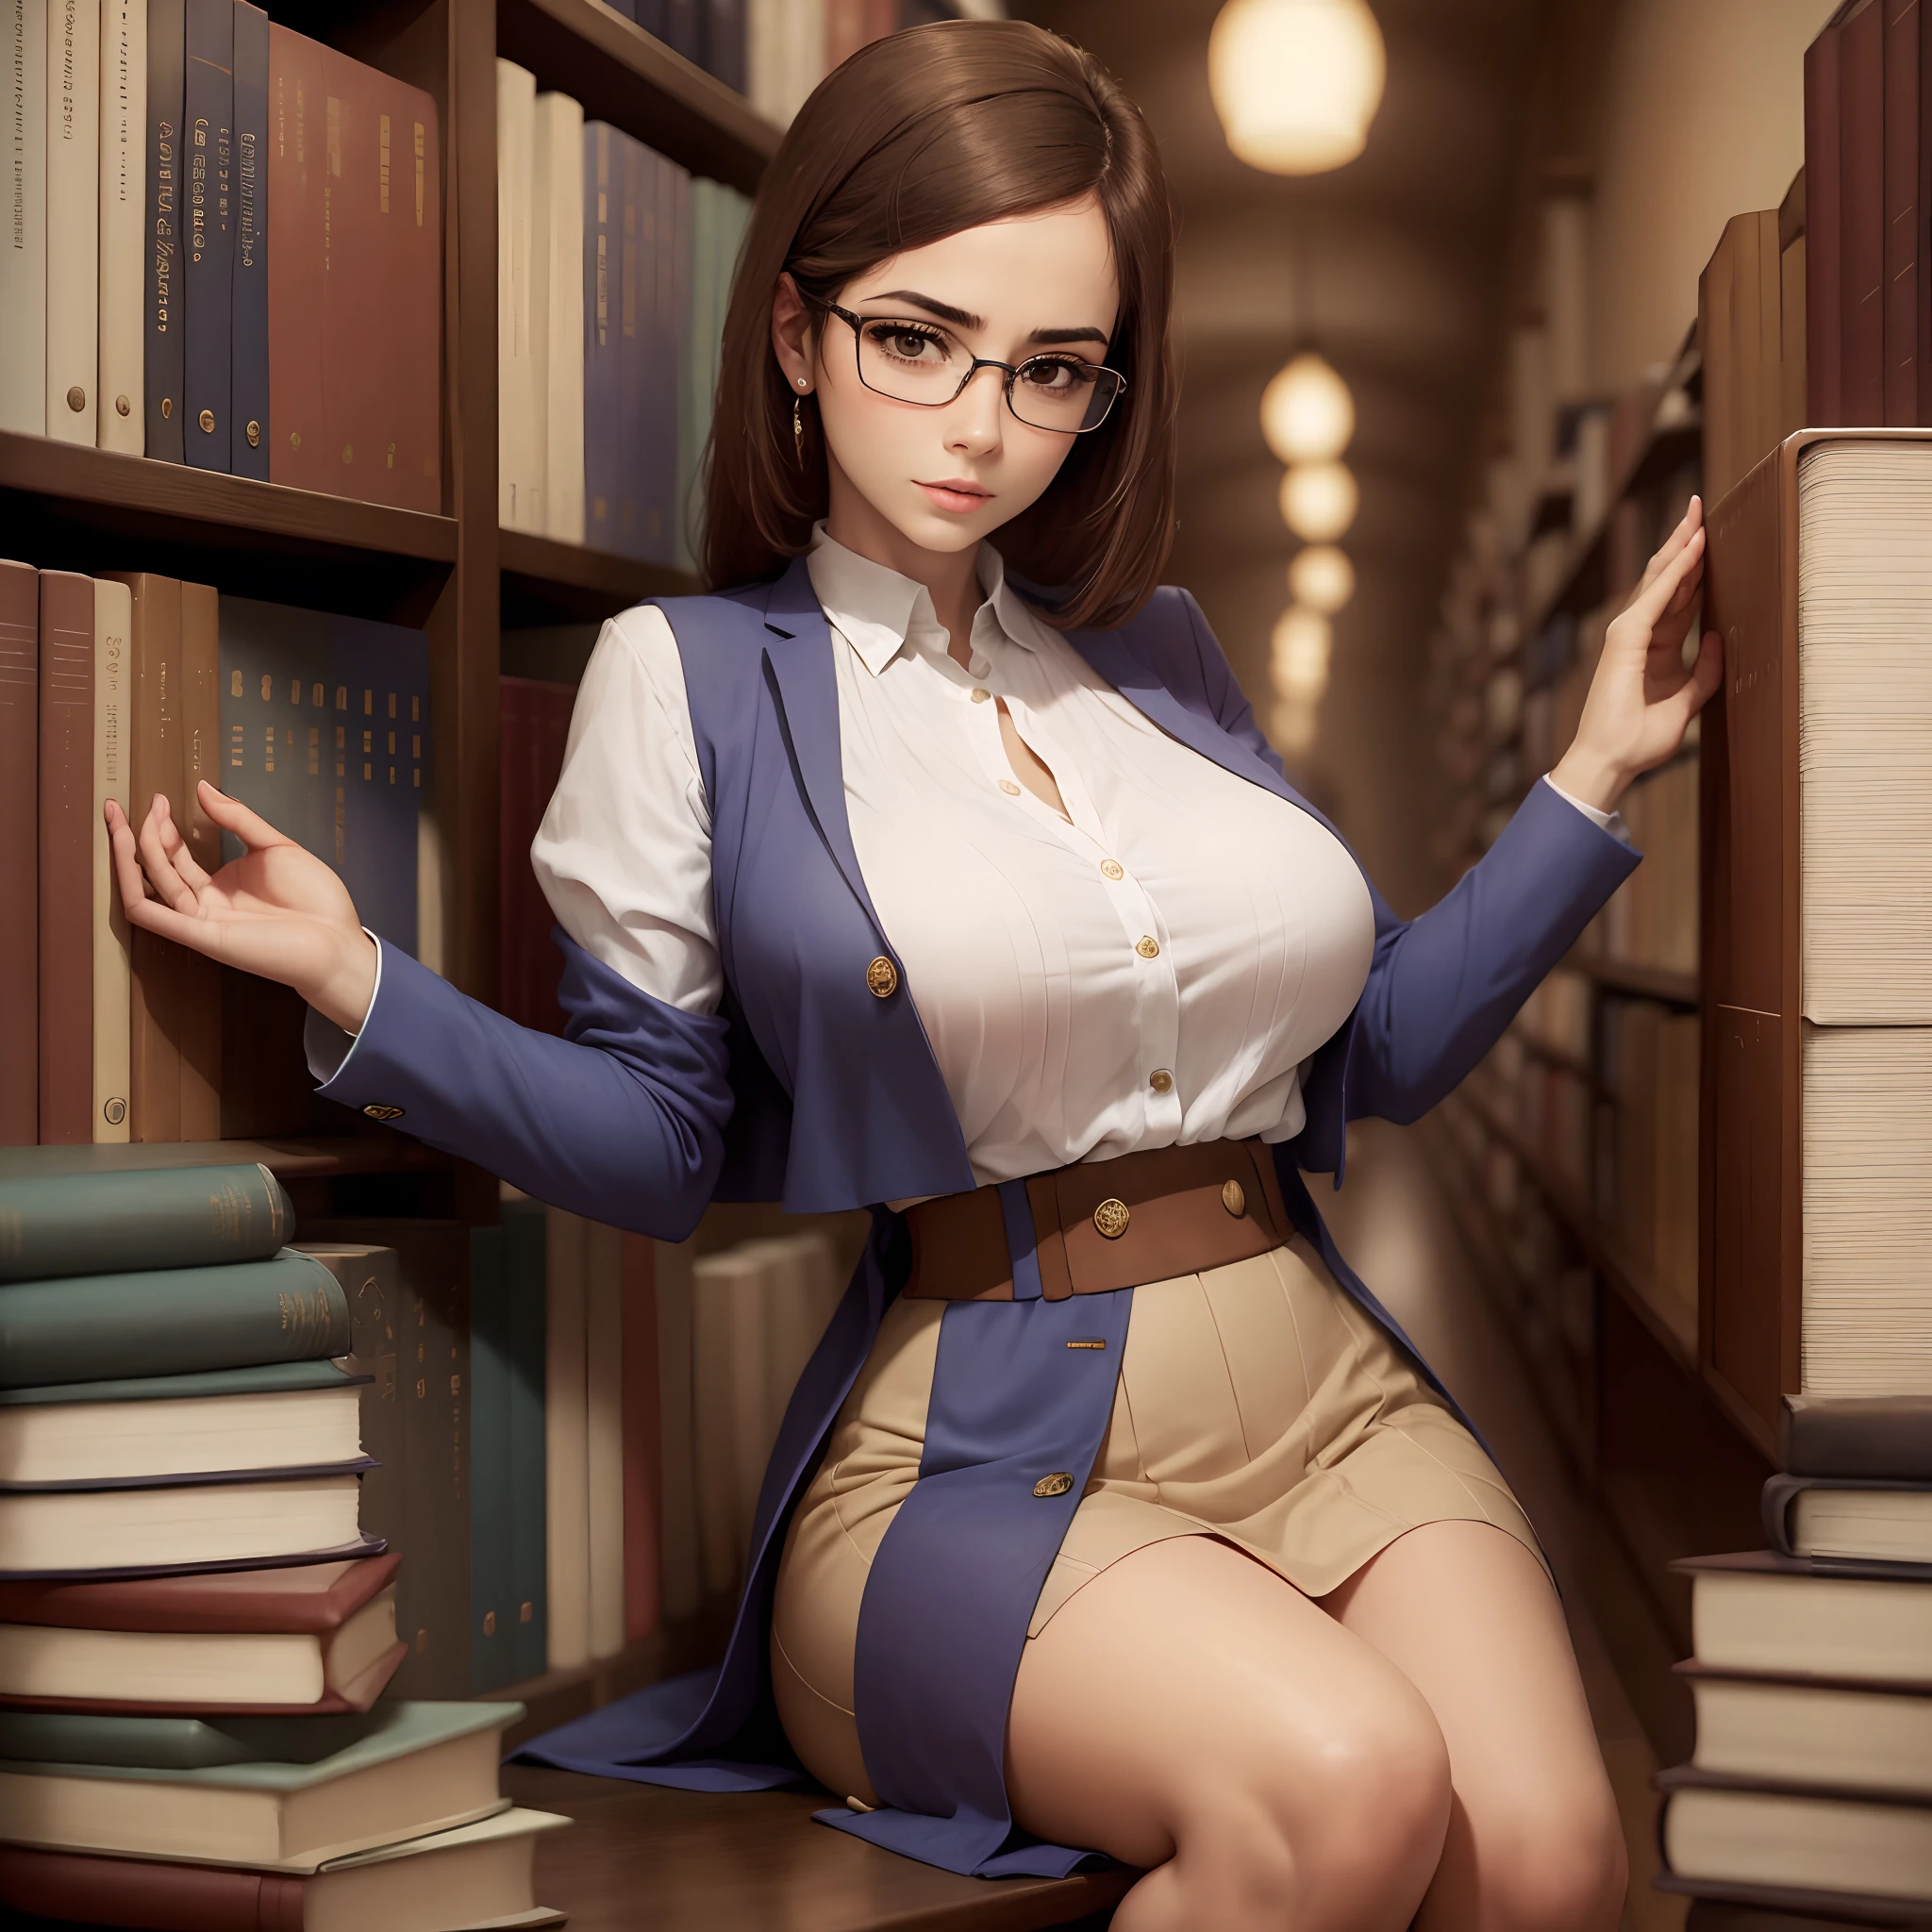 1名女士, 美麗的, 感性的, 在圖書館裡, 戴眼鏡, 大乳房, 苗條的, 優雅的